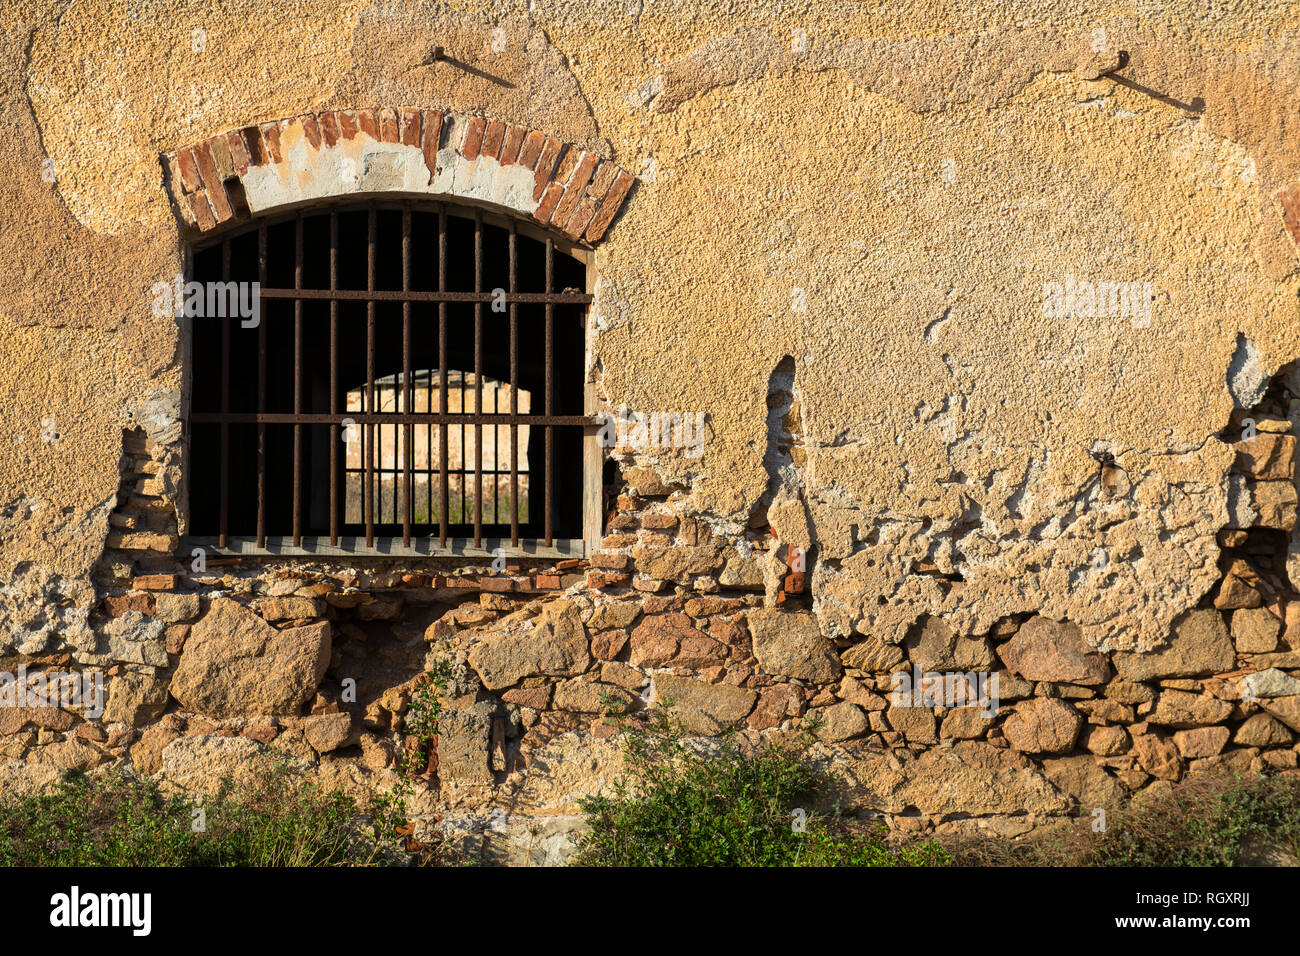 Ein Fenster eines alten Gebäudes oder Gefängnisses mit Bars am Fensterrahmen, auf der Insel Caprera, Sardinien, Italien. Stockfoto